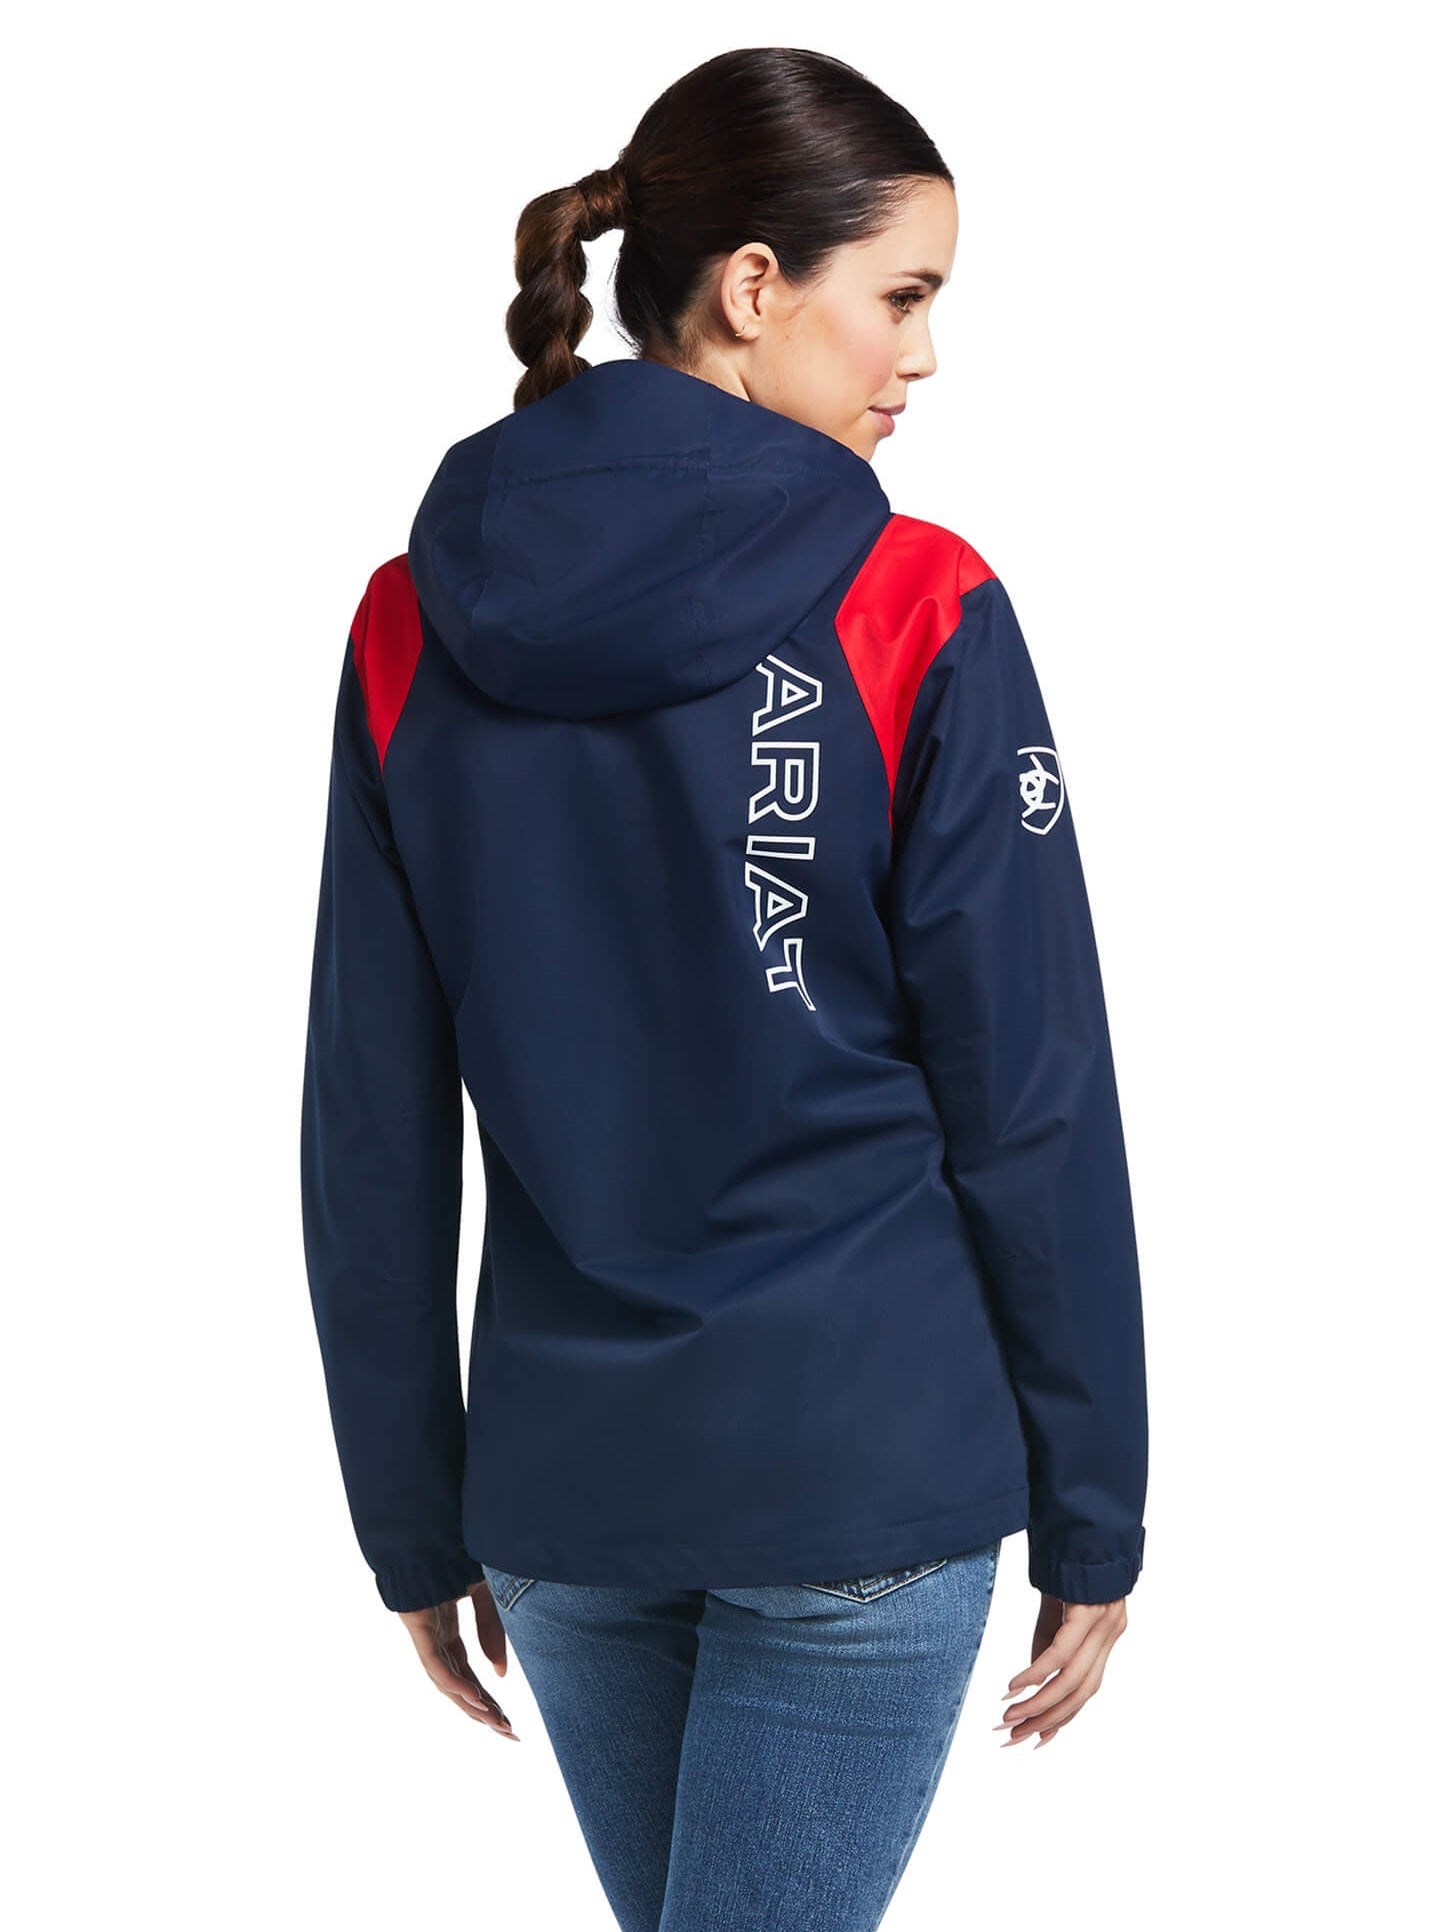 ARIAT Women's Spectator Waterproof Jacket - Team Navy